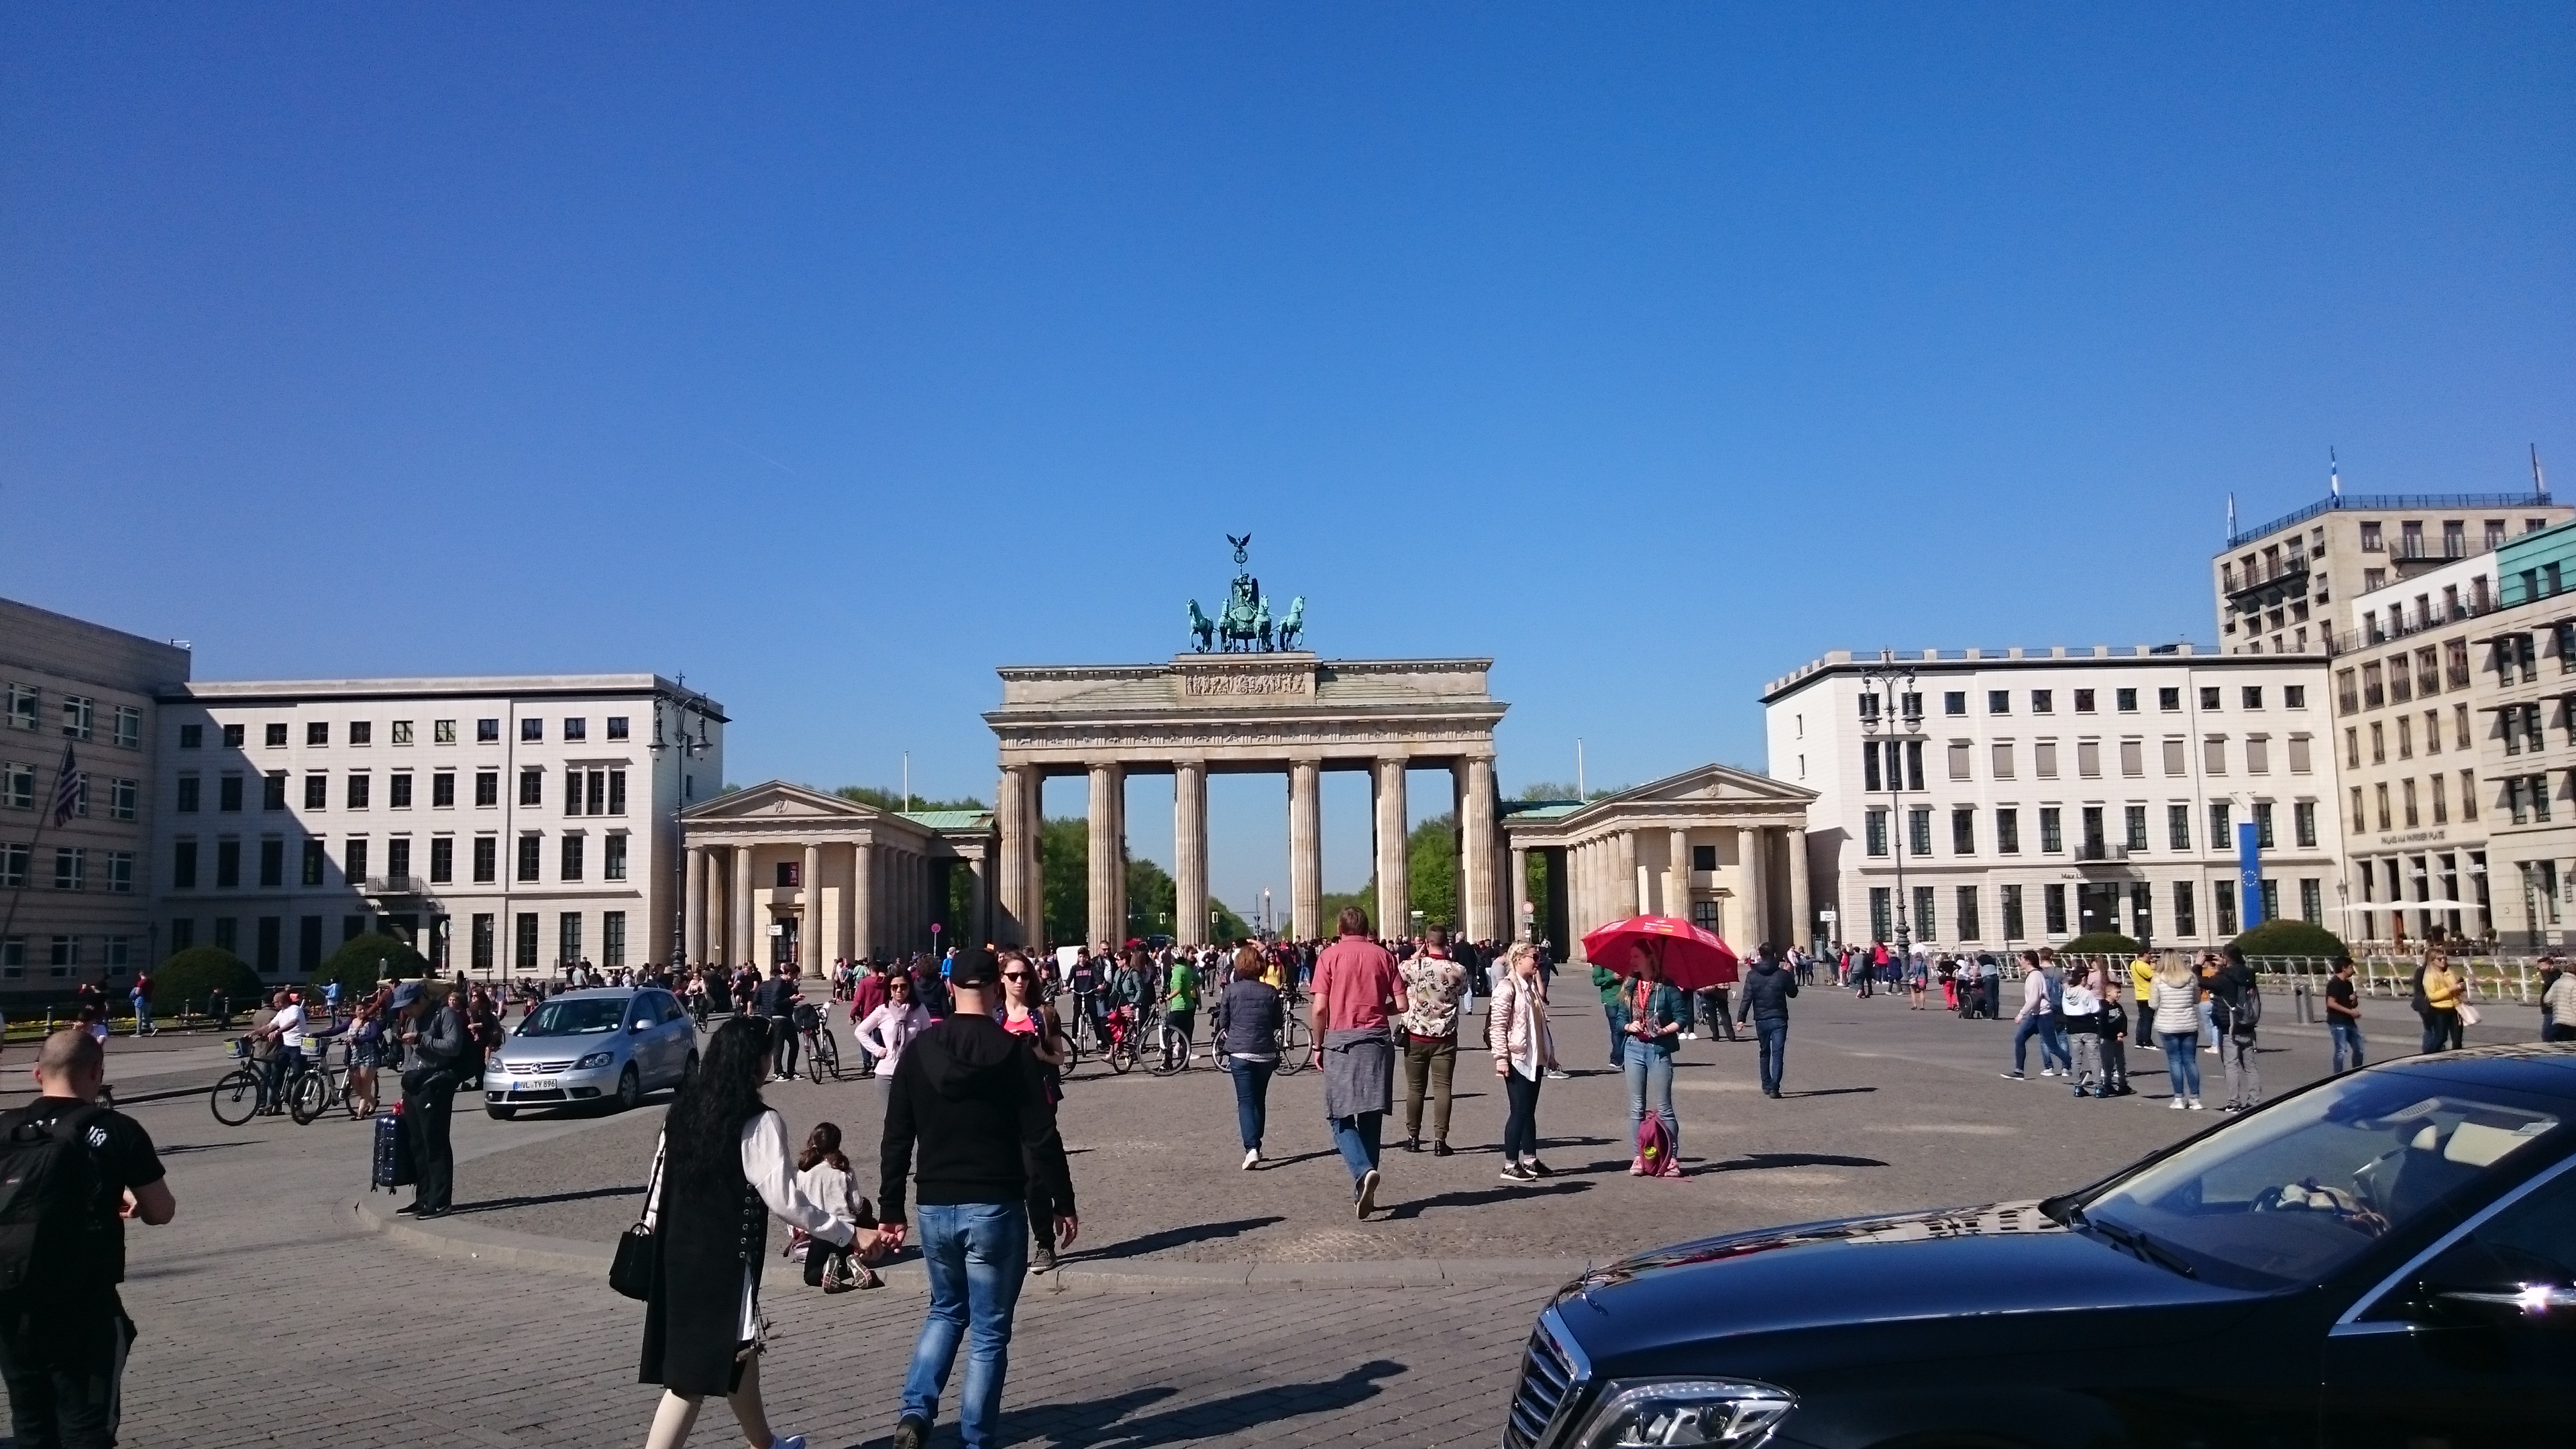 Berlin - Brandenburger Tor, altid imponerende